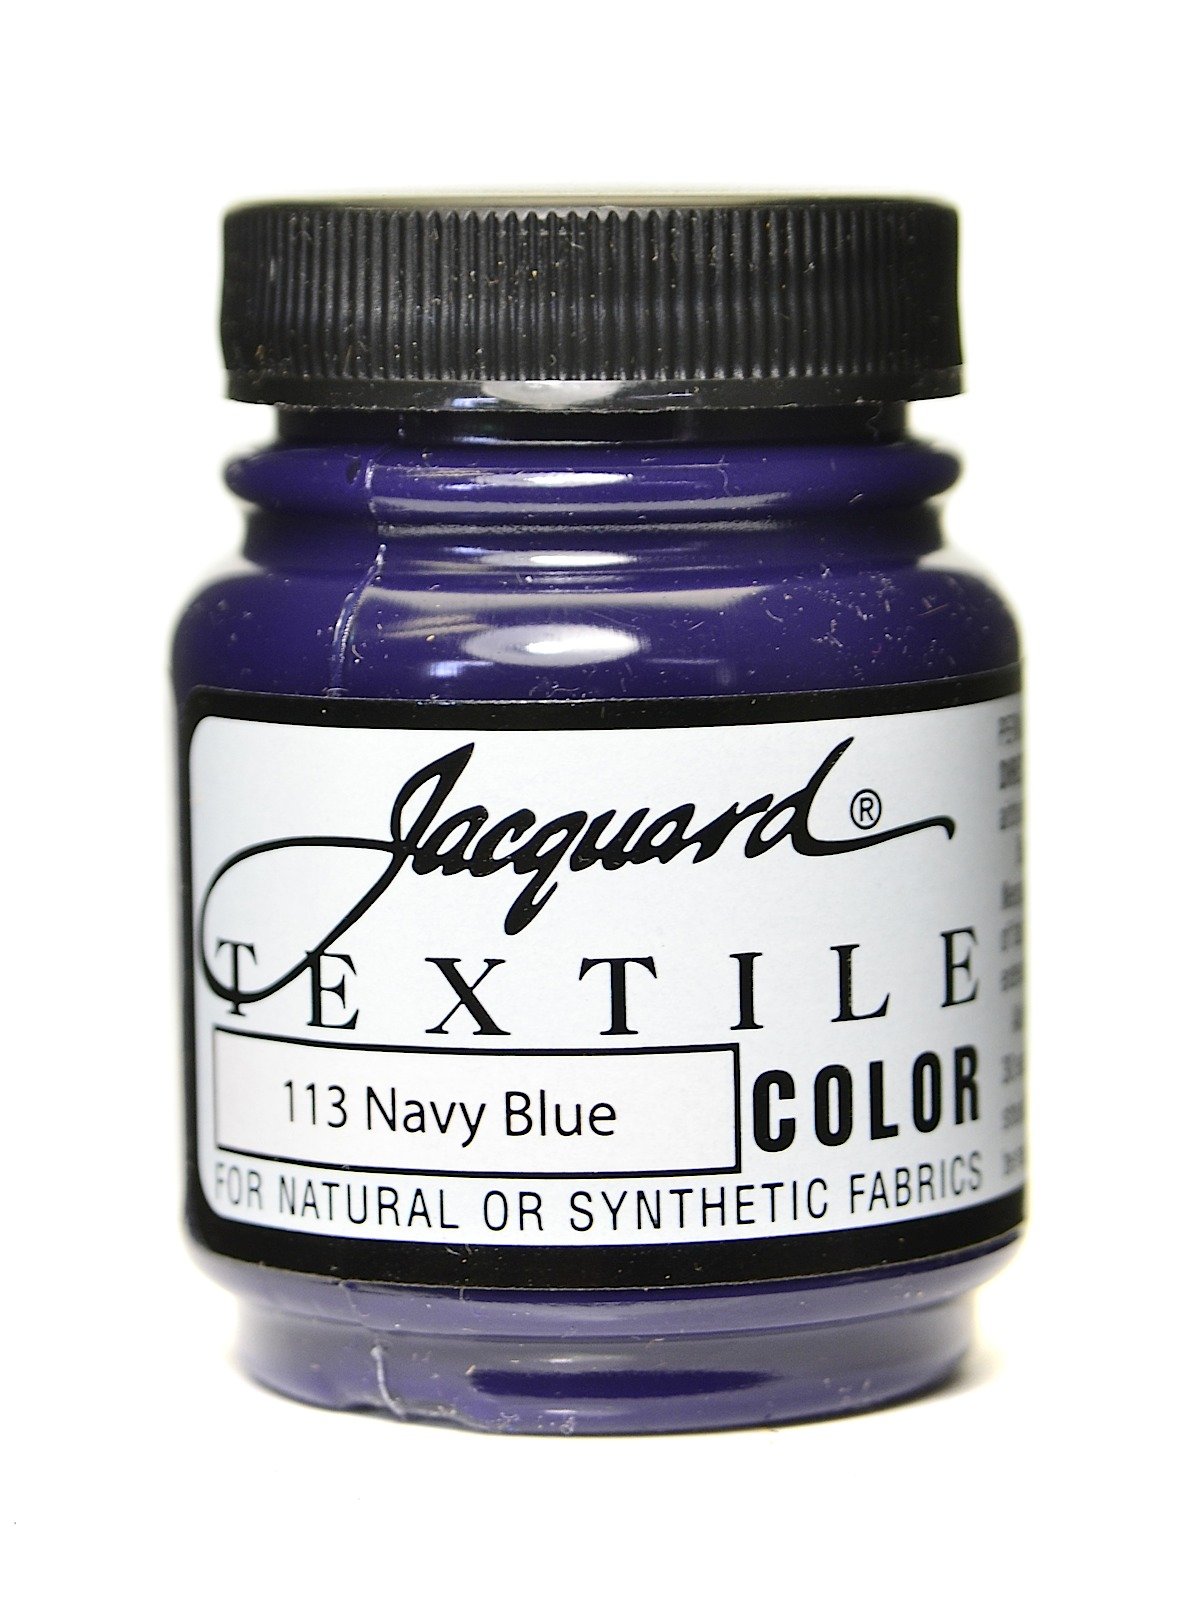 Jacquard Textile Color Fabric Paint 2.25Oz-Sapphire Blue